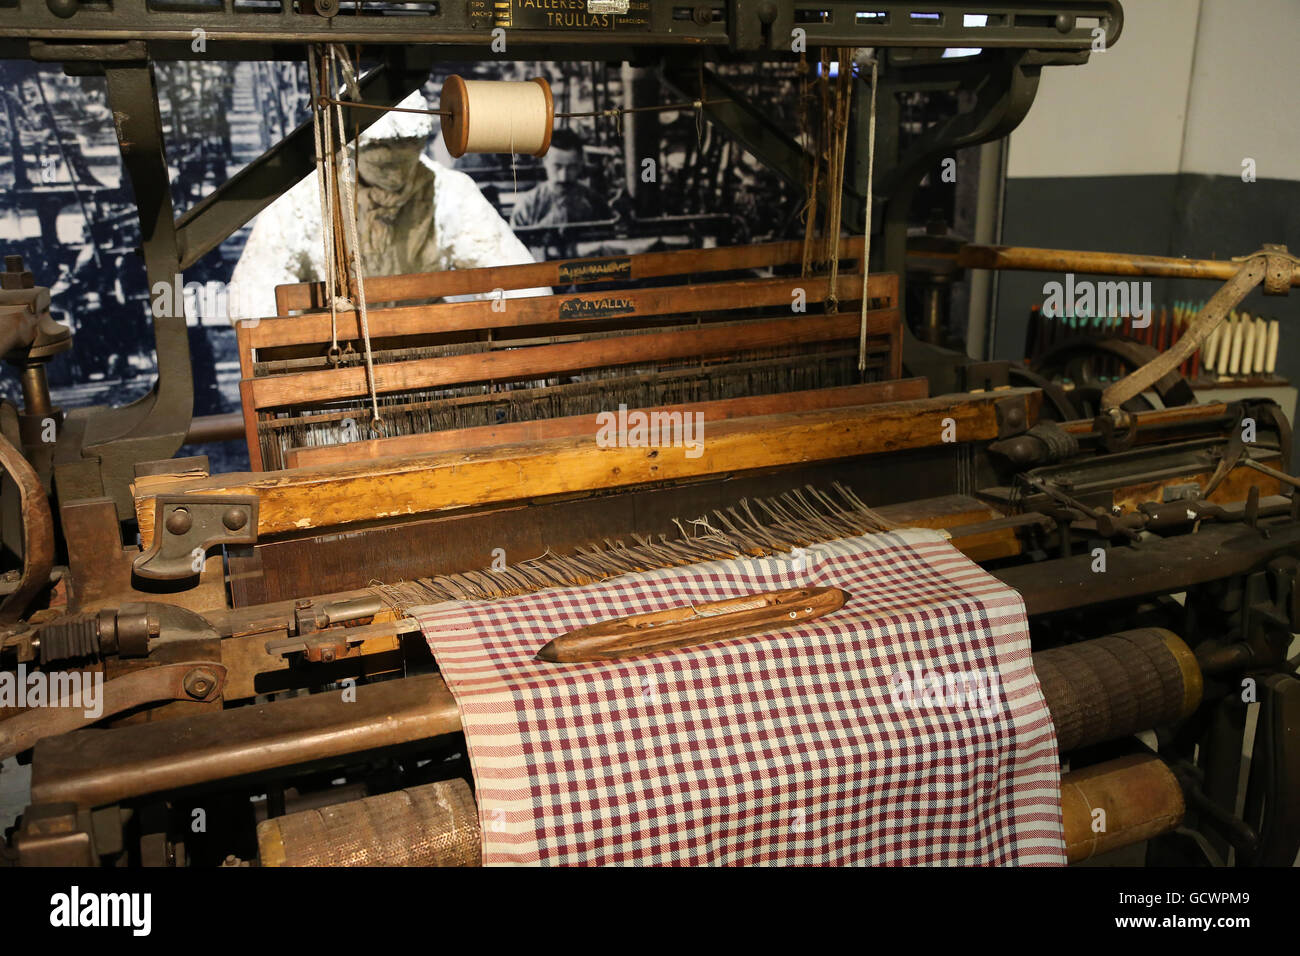 Usines de textile. 19e siècle. Femme a travaillé dans l'industrie textile. La reproduction. Espagne.Musée de l'histoire de la Catalogne, Barcelone Banque D'Images